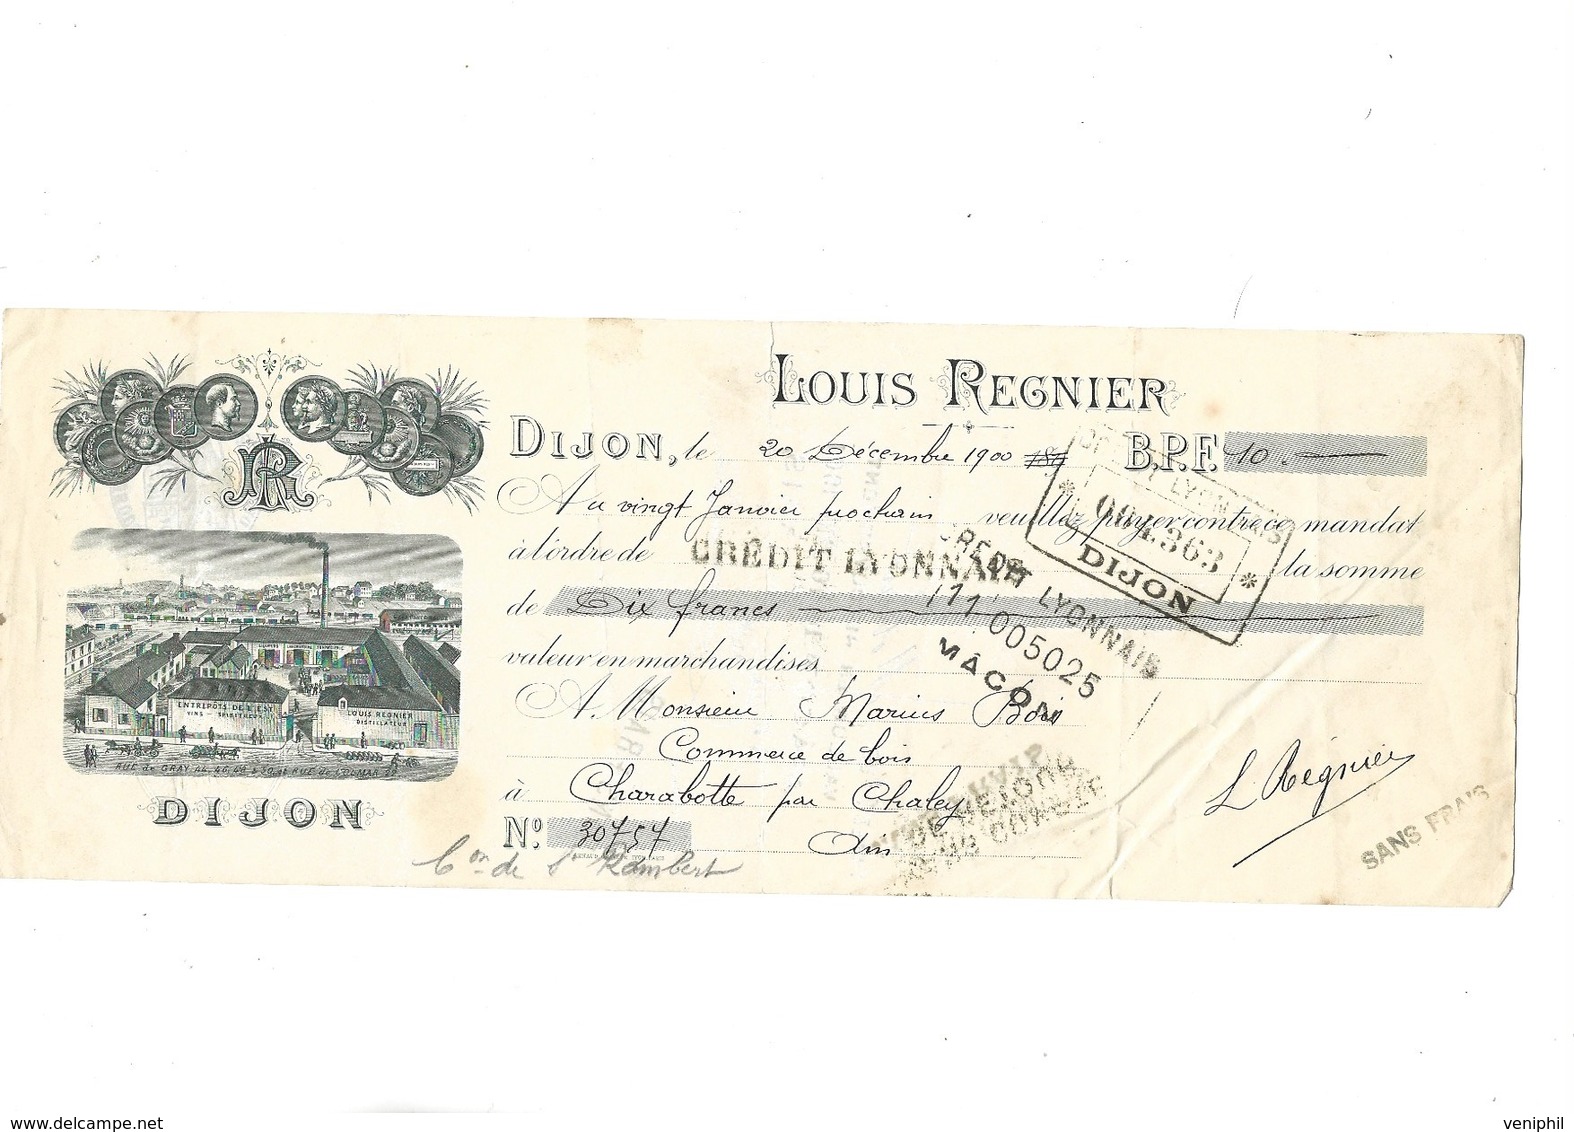 TRAITE ILLUSTREE - LOUIS REGNIER - DIJON -ANNEE 1900 - Lettres De Change